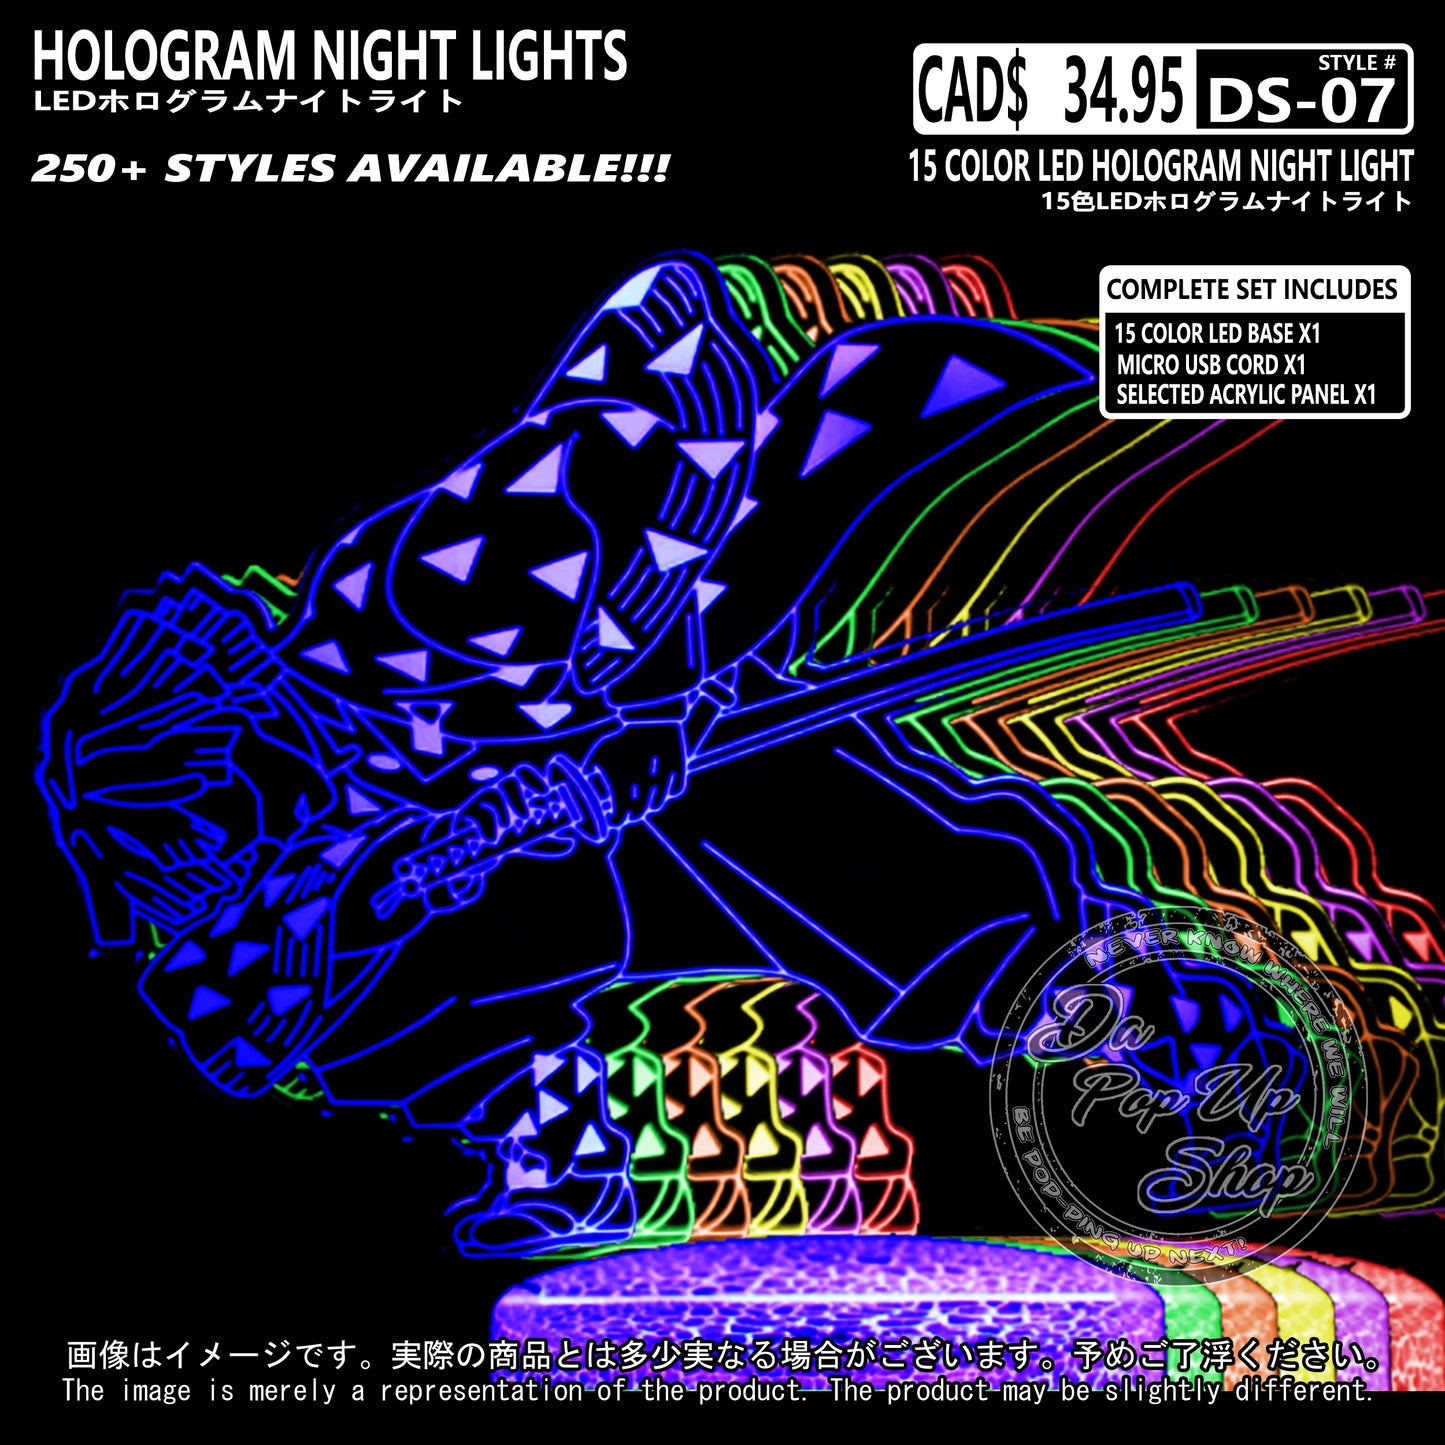 (DS-07) Demon Slayer Hologram LED Night Light